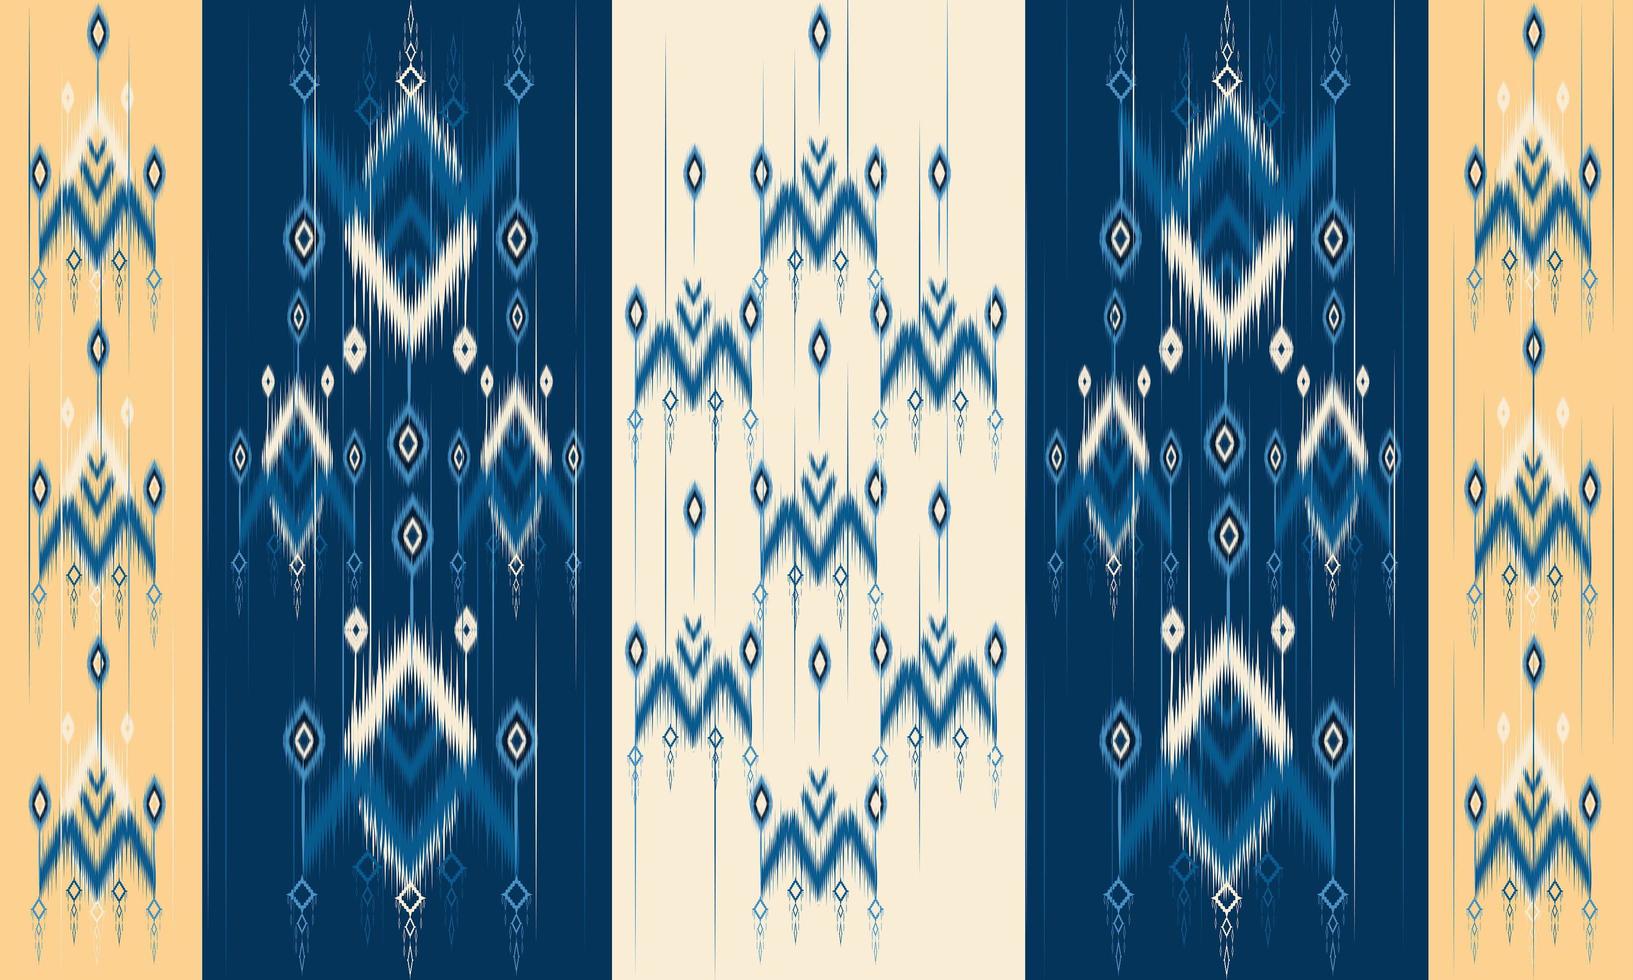 geometrisk etnisk orientalisk ikat mönster traditionell design för bakgrund, matta, tapeter, kläder, inslagning, batik, tyg, vektor illustration.broderi stil.